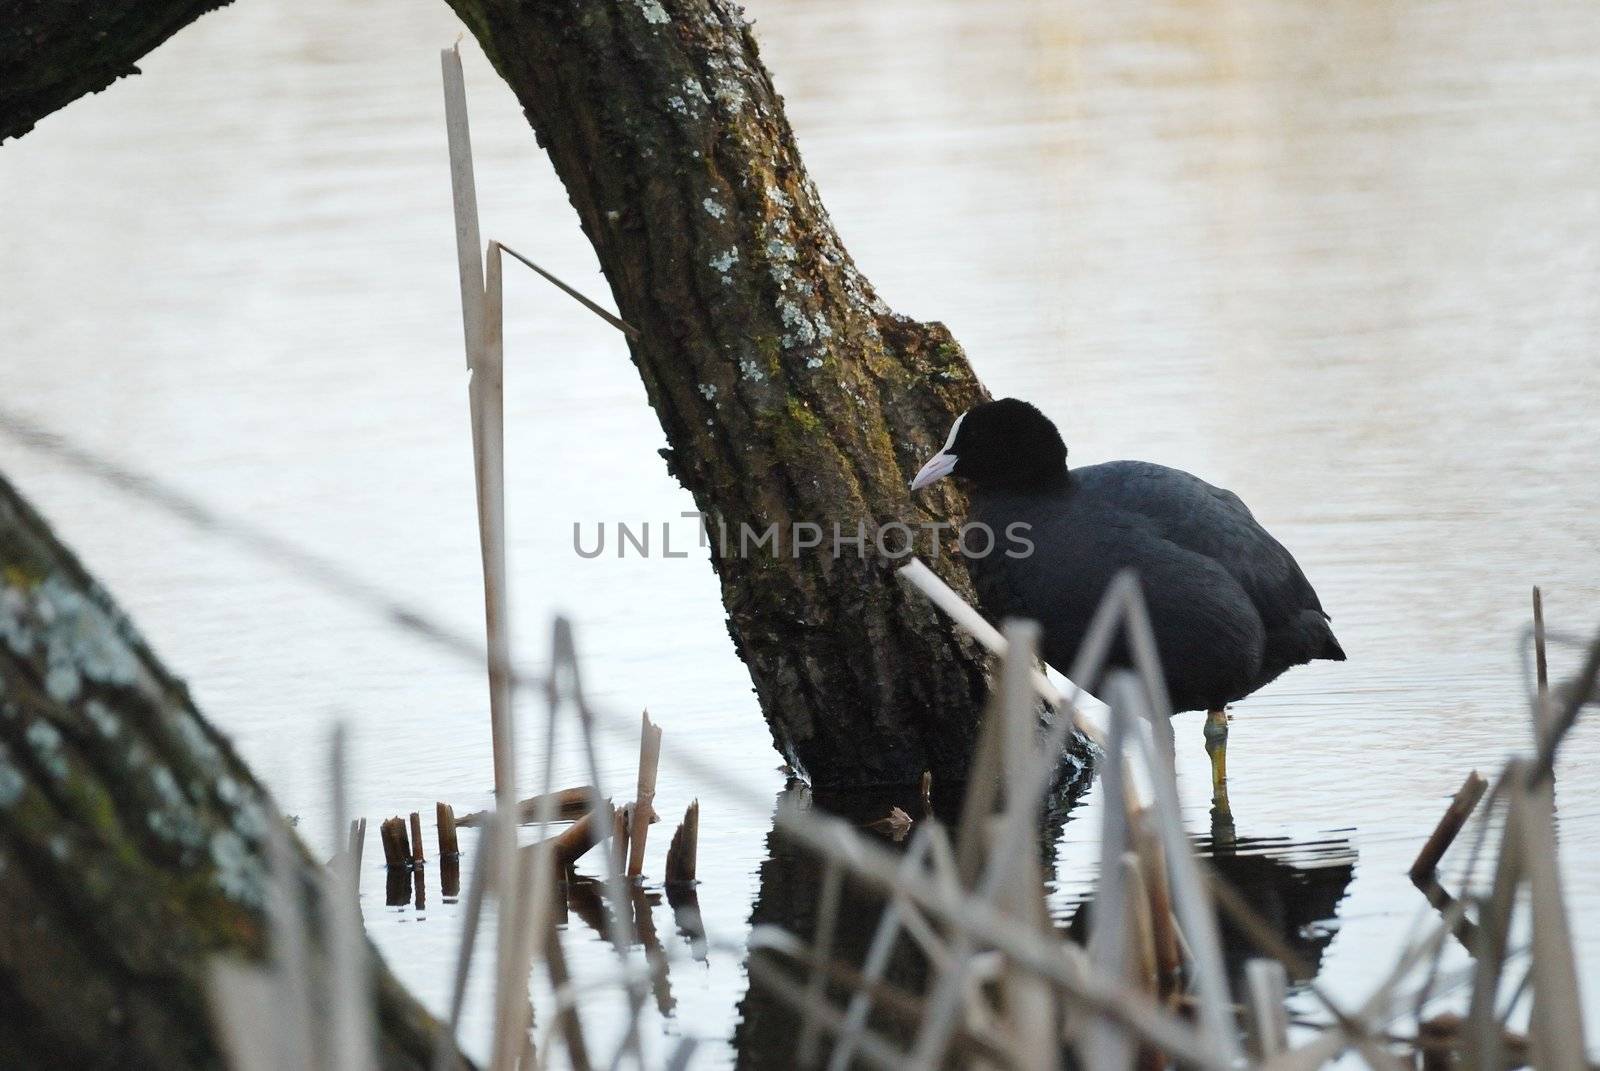 black water bird on the waterside of little lake